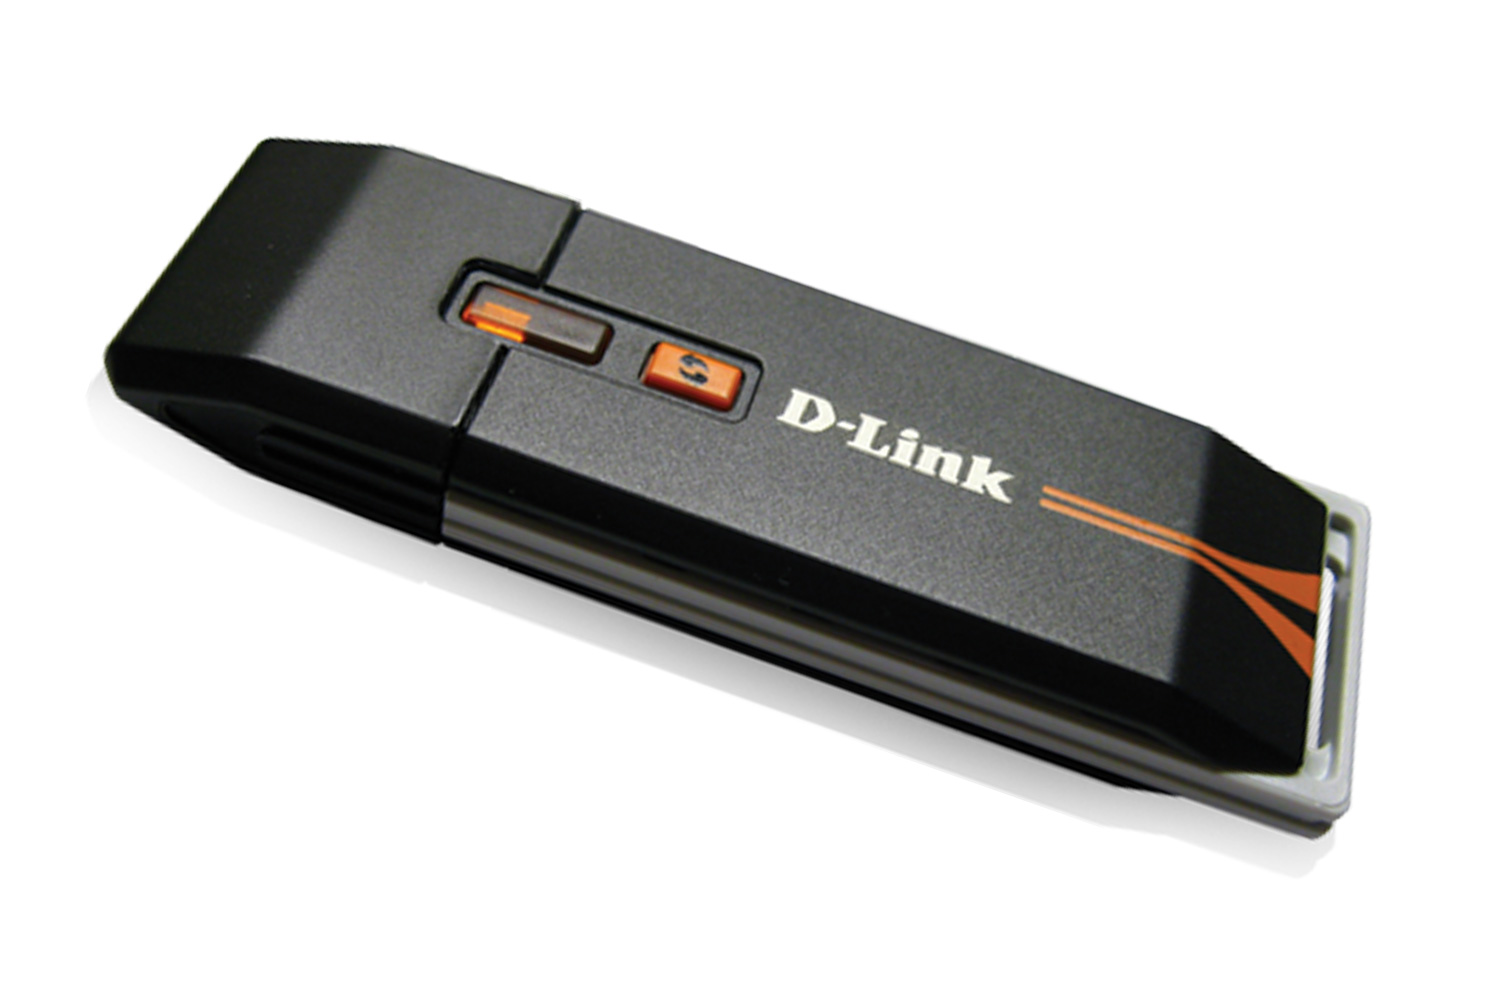 D-Link DWA-125 USB Wireless Adapter Driver v.1.55 rev. Ax Windows XP / 7 / 8 / 8.1 32-64 bits